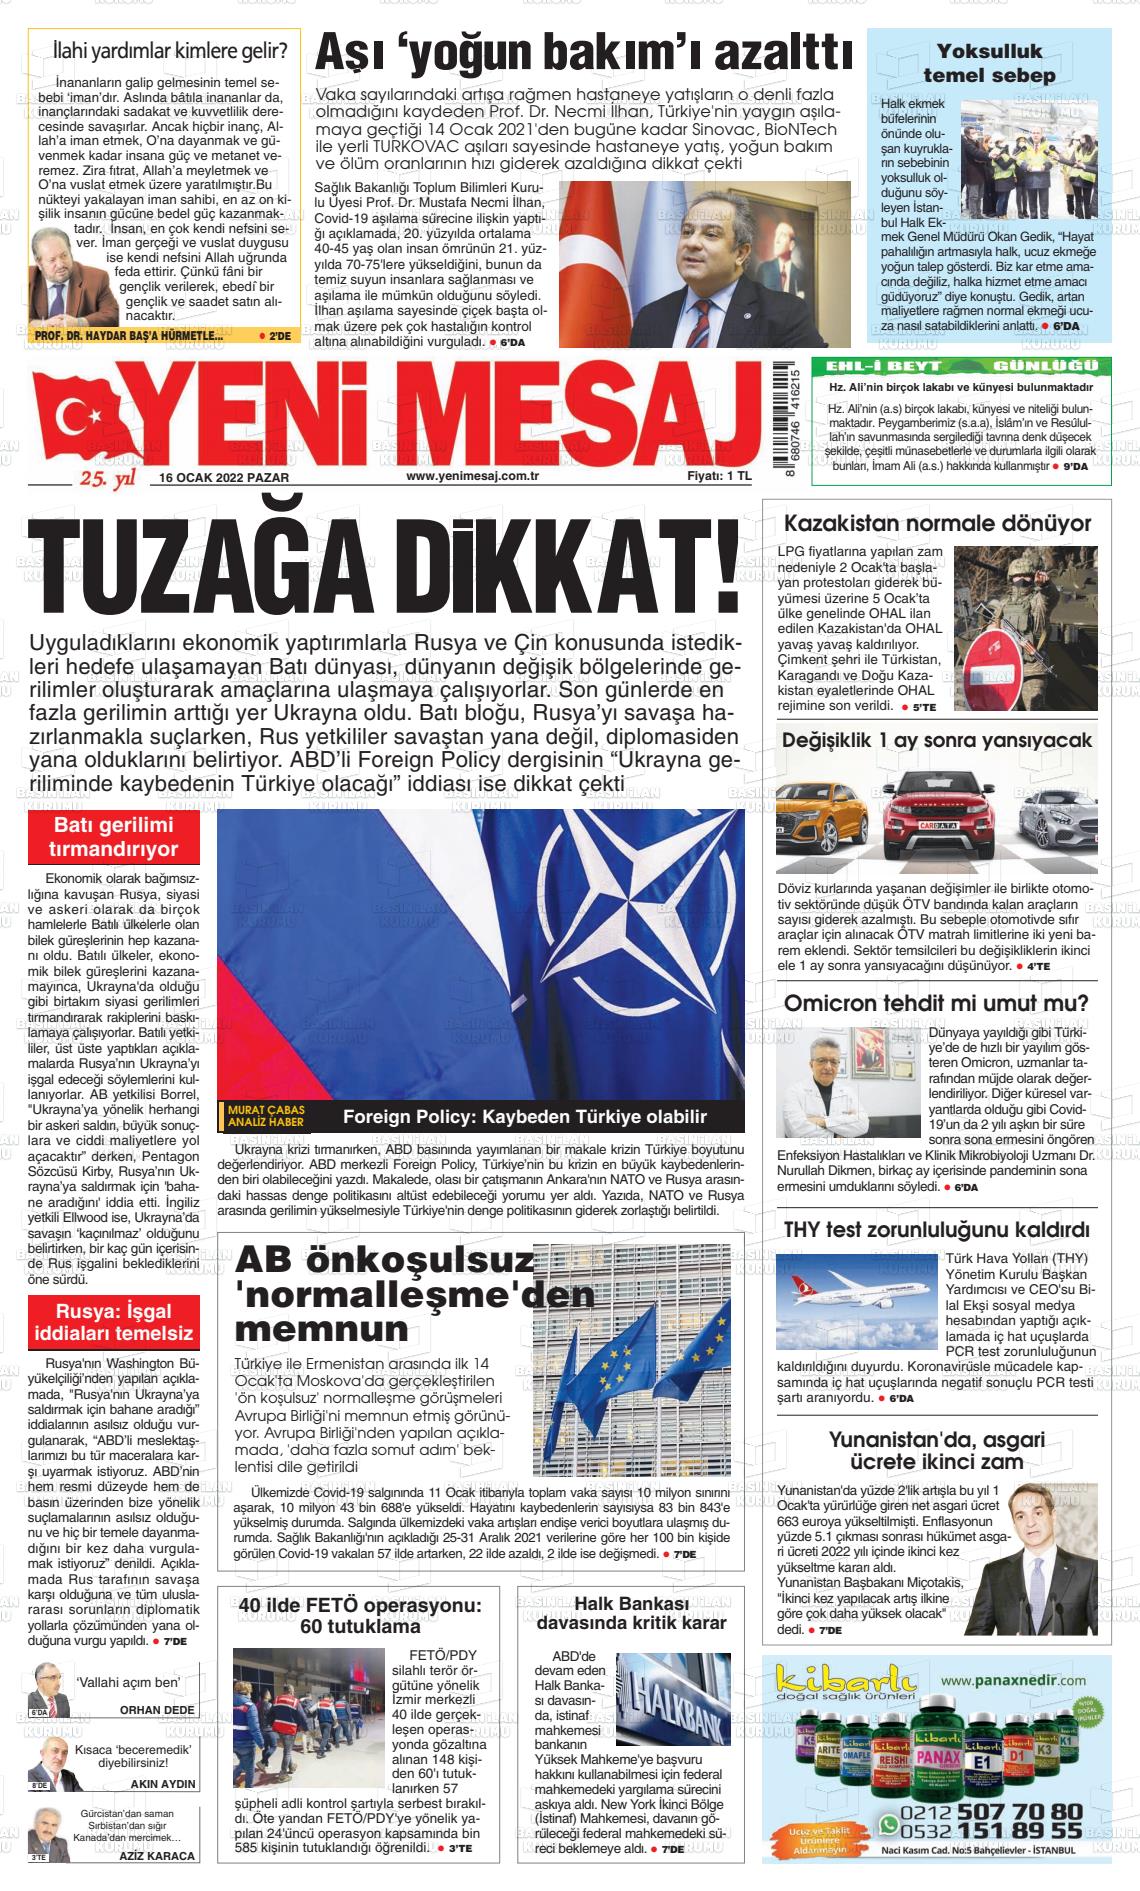 16 Ocak 2022 Yeni Mesaj Gazete Manşeti